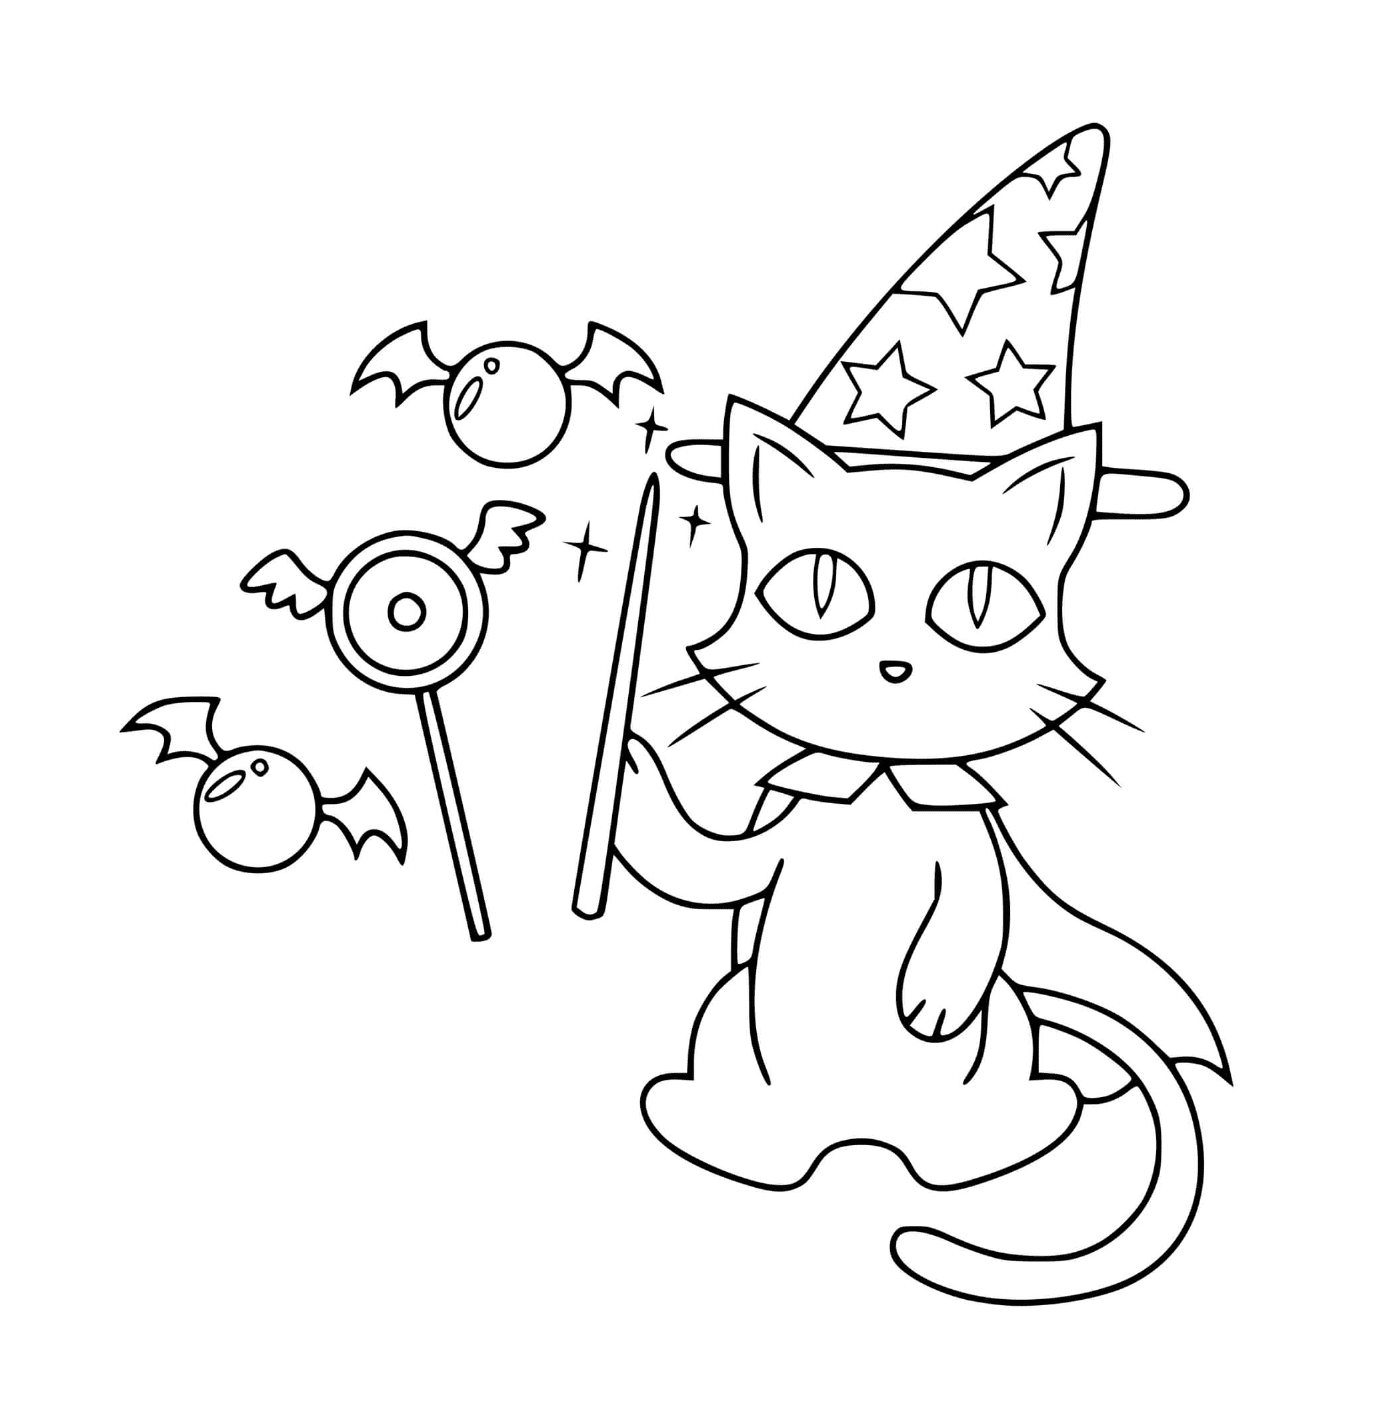  gato mágico disfrazado de bruja 